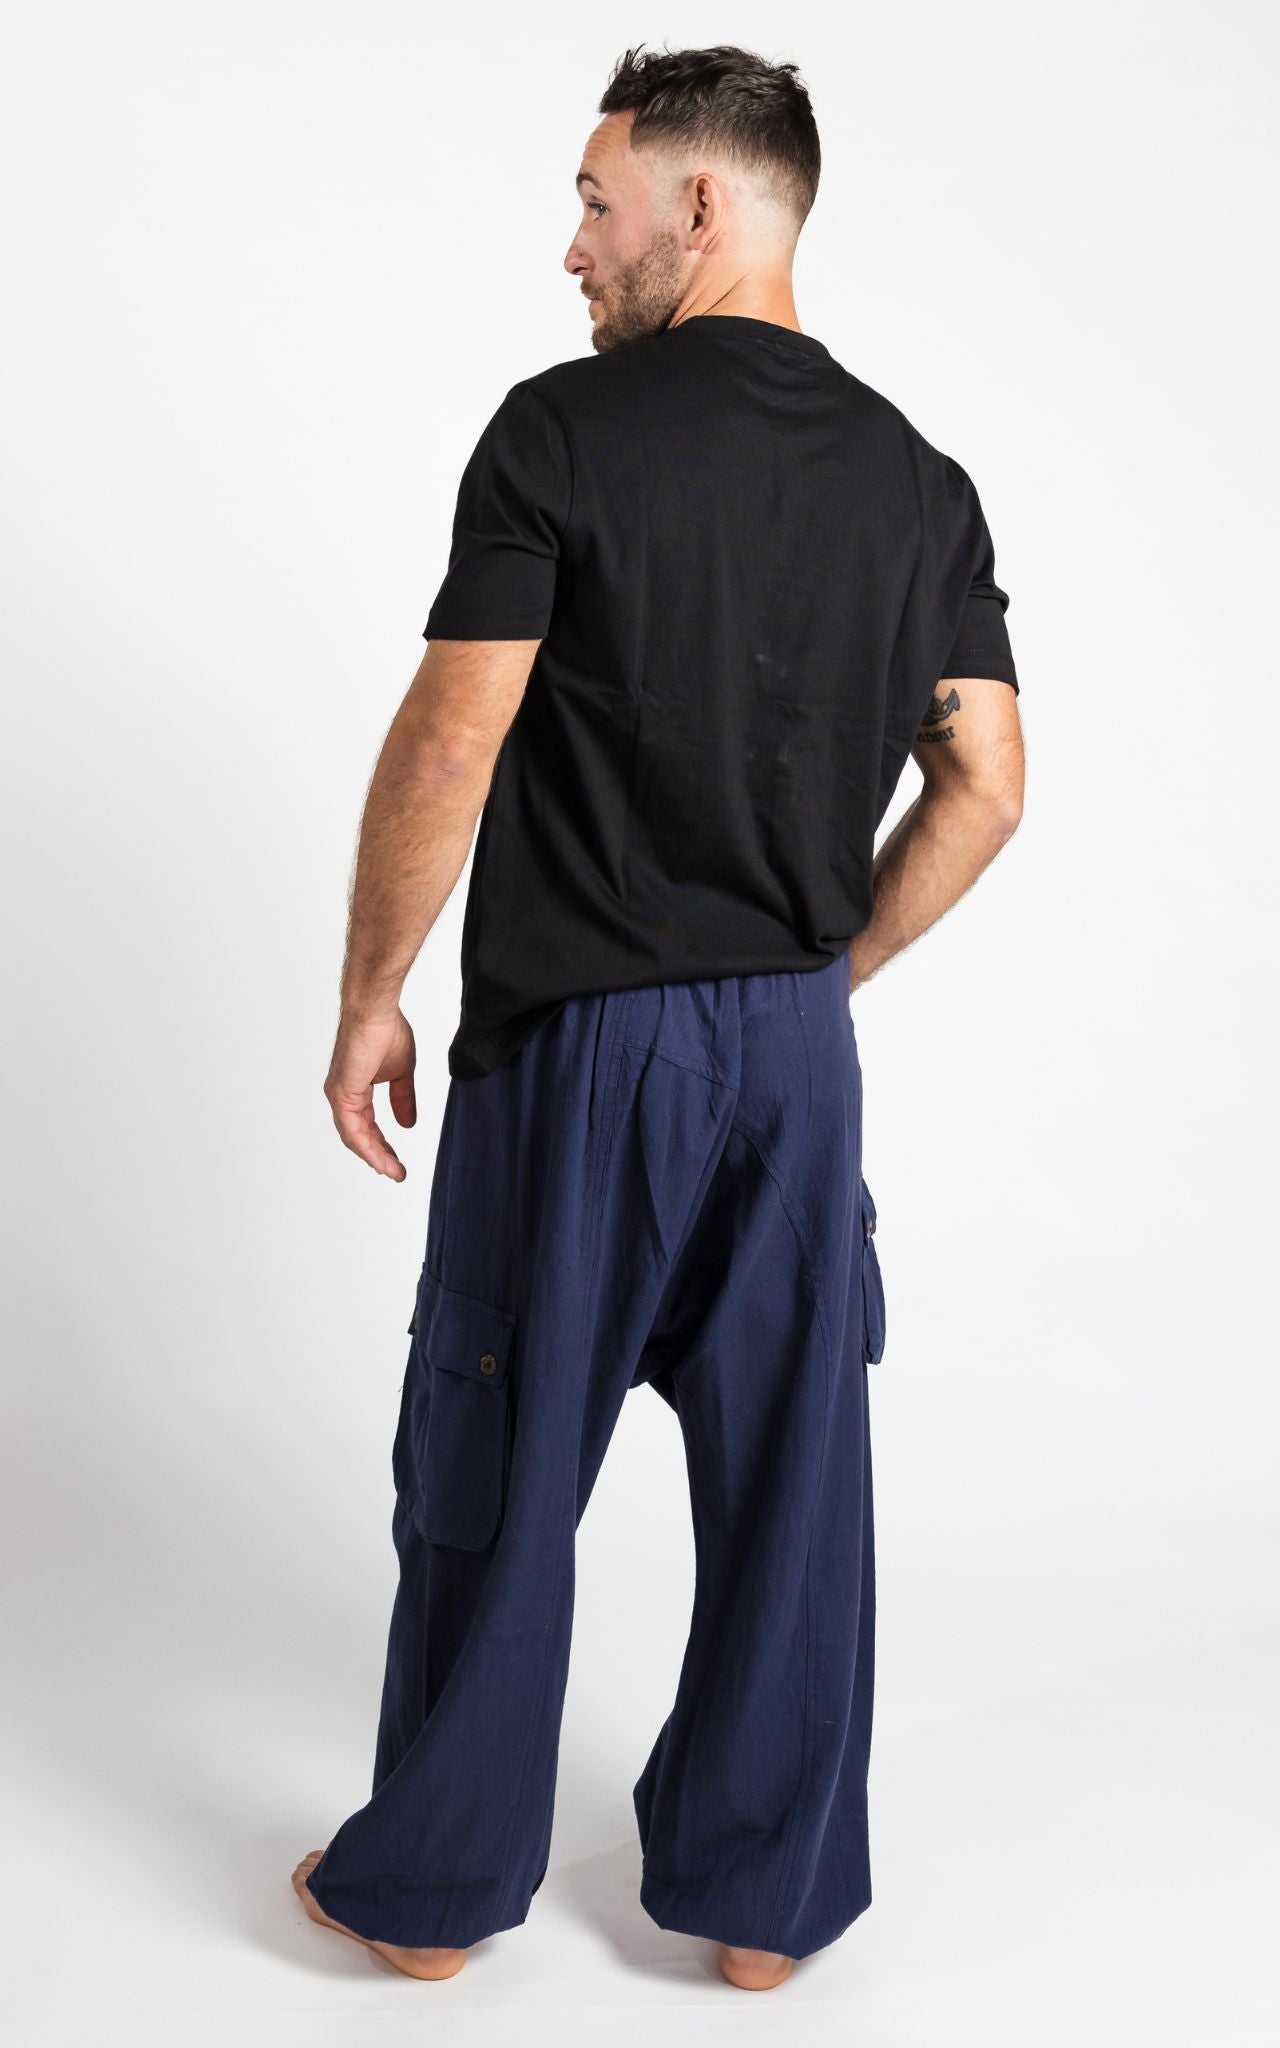 Surya Australia Ethical Cotton Drop Crotch Pants for Men - Blue